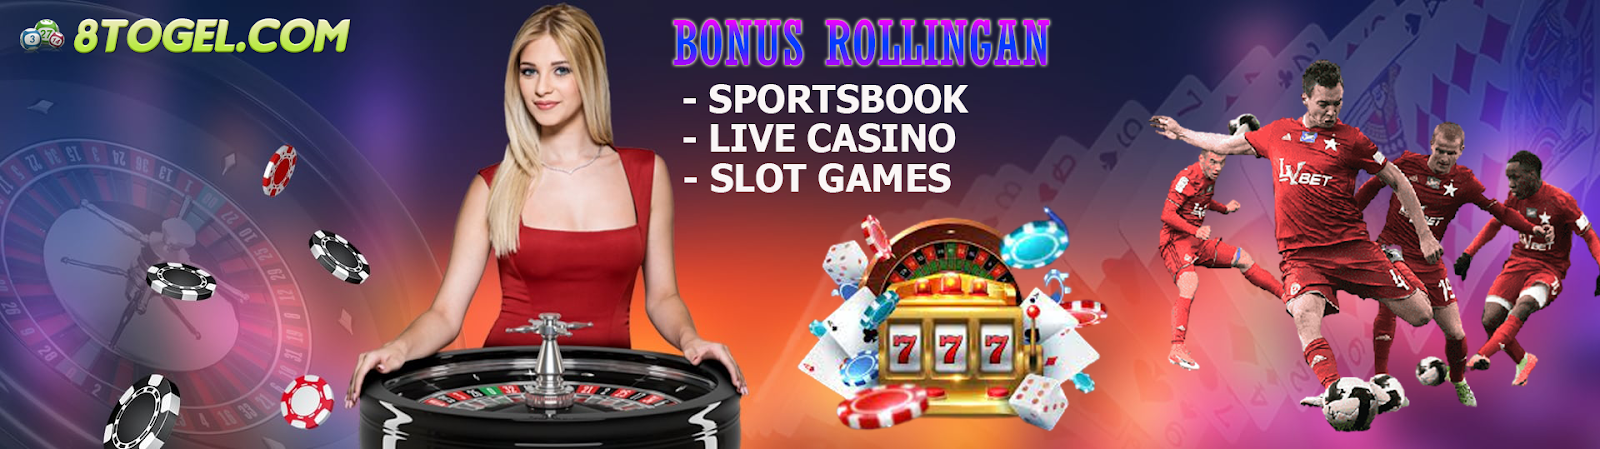 Bonus Rollingan Sportsbook, Live Casino dan Slot Games